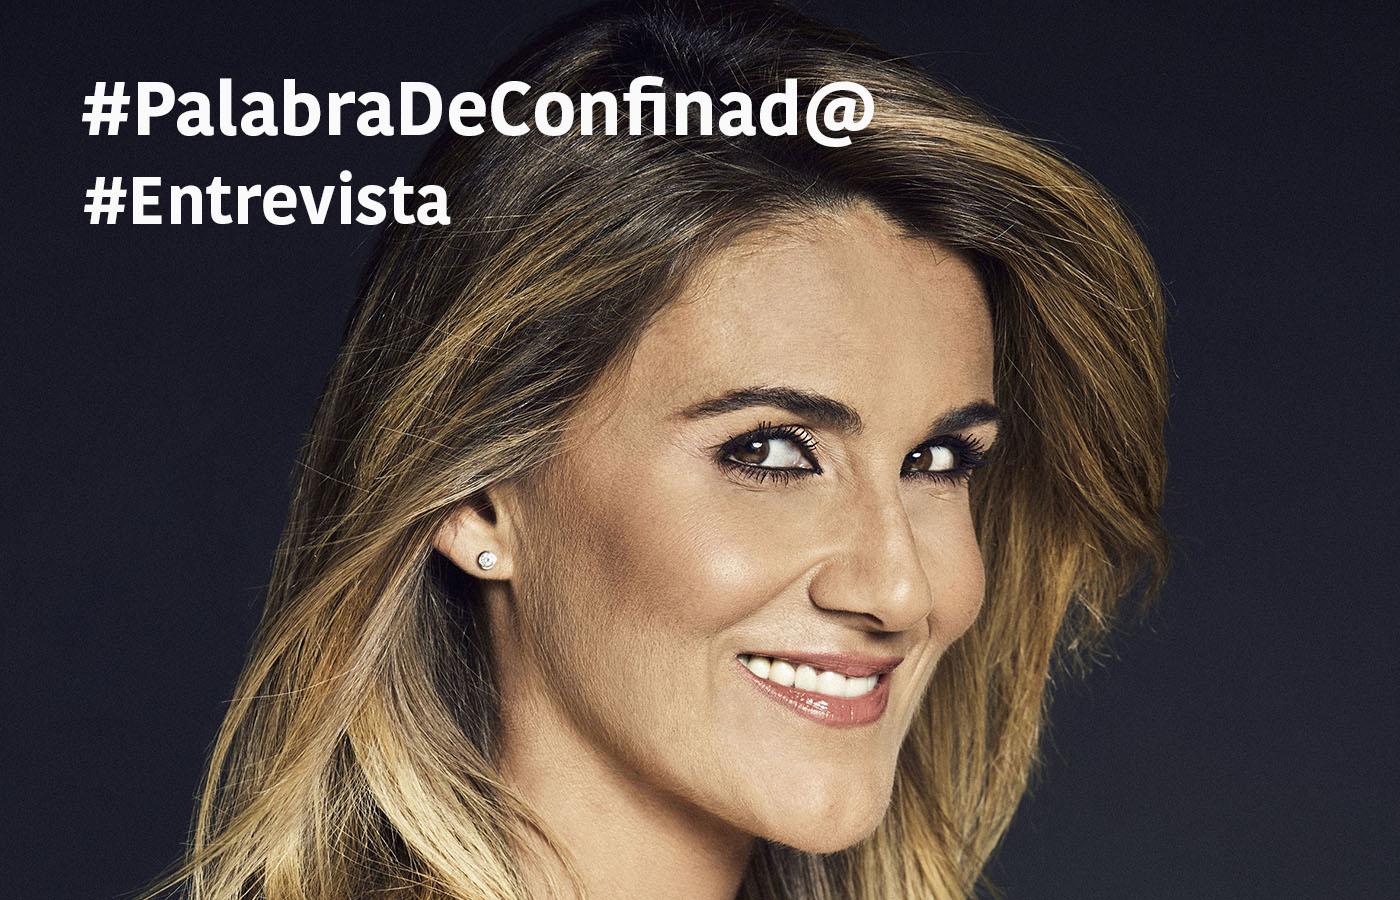 La presentadora de Telecinco Carlota Corredera protagoniza nuestra primera entrevista Palabra de Cofinad@. Hemos hablado con ella sobre la crisis del coronavirus y cómo prevé que sea la España postcoronavirus